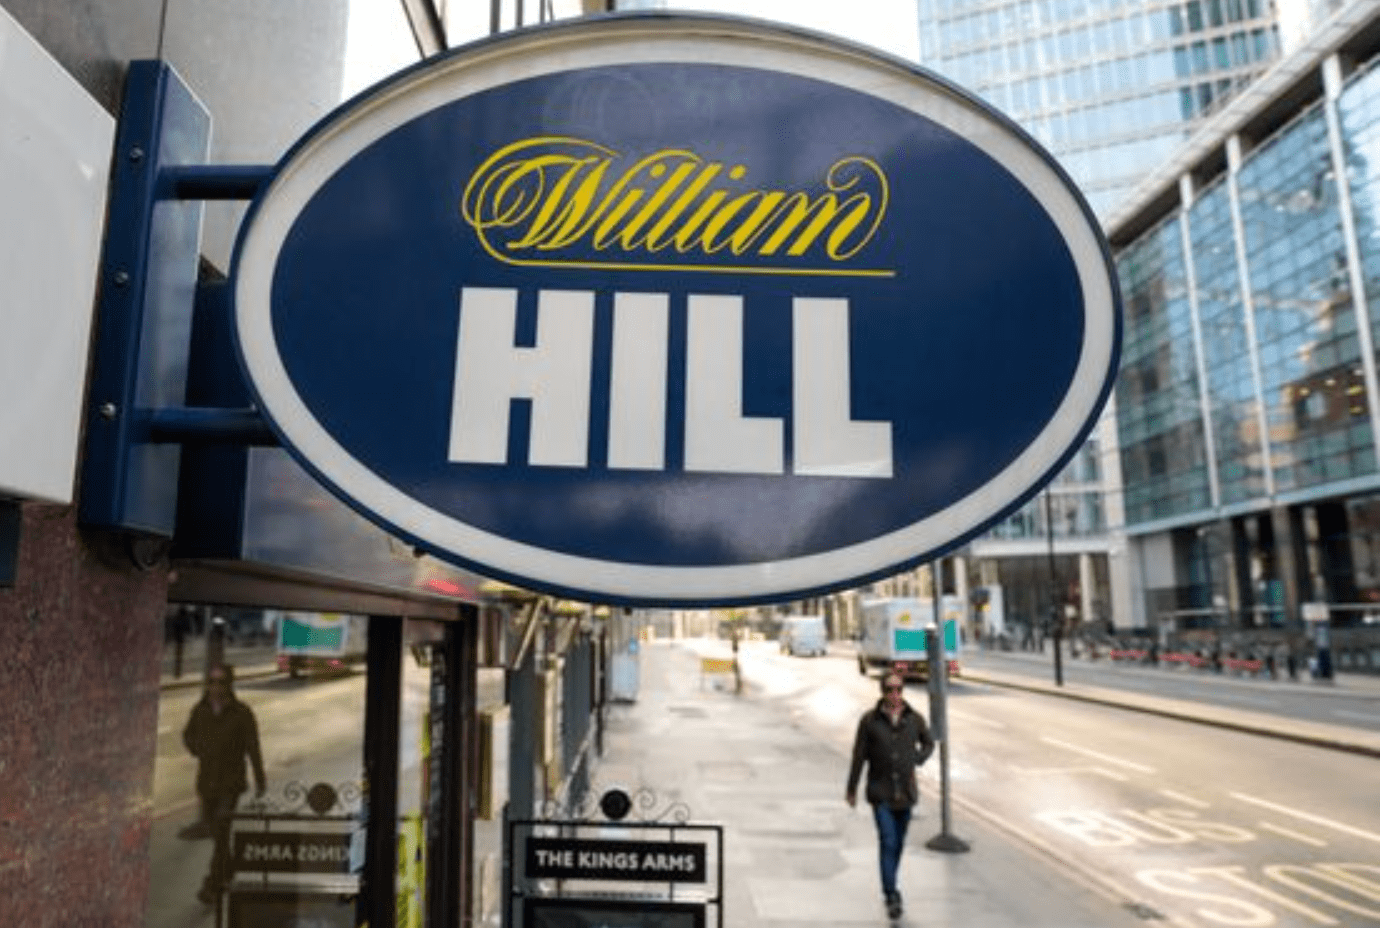 Cadastro no William Hill Brasil - Como abrir uma conta?